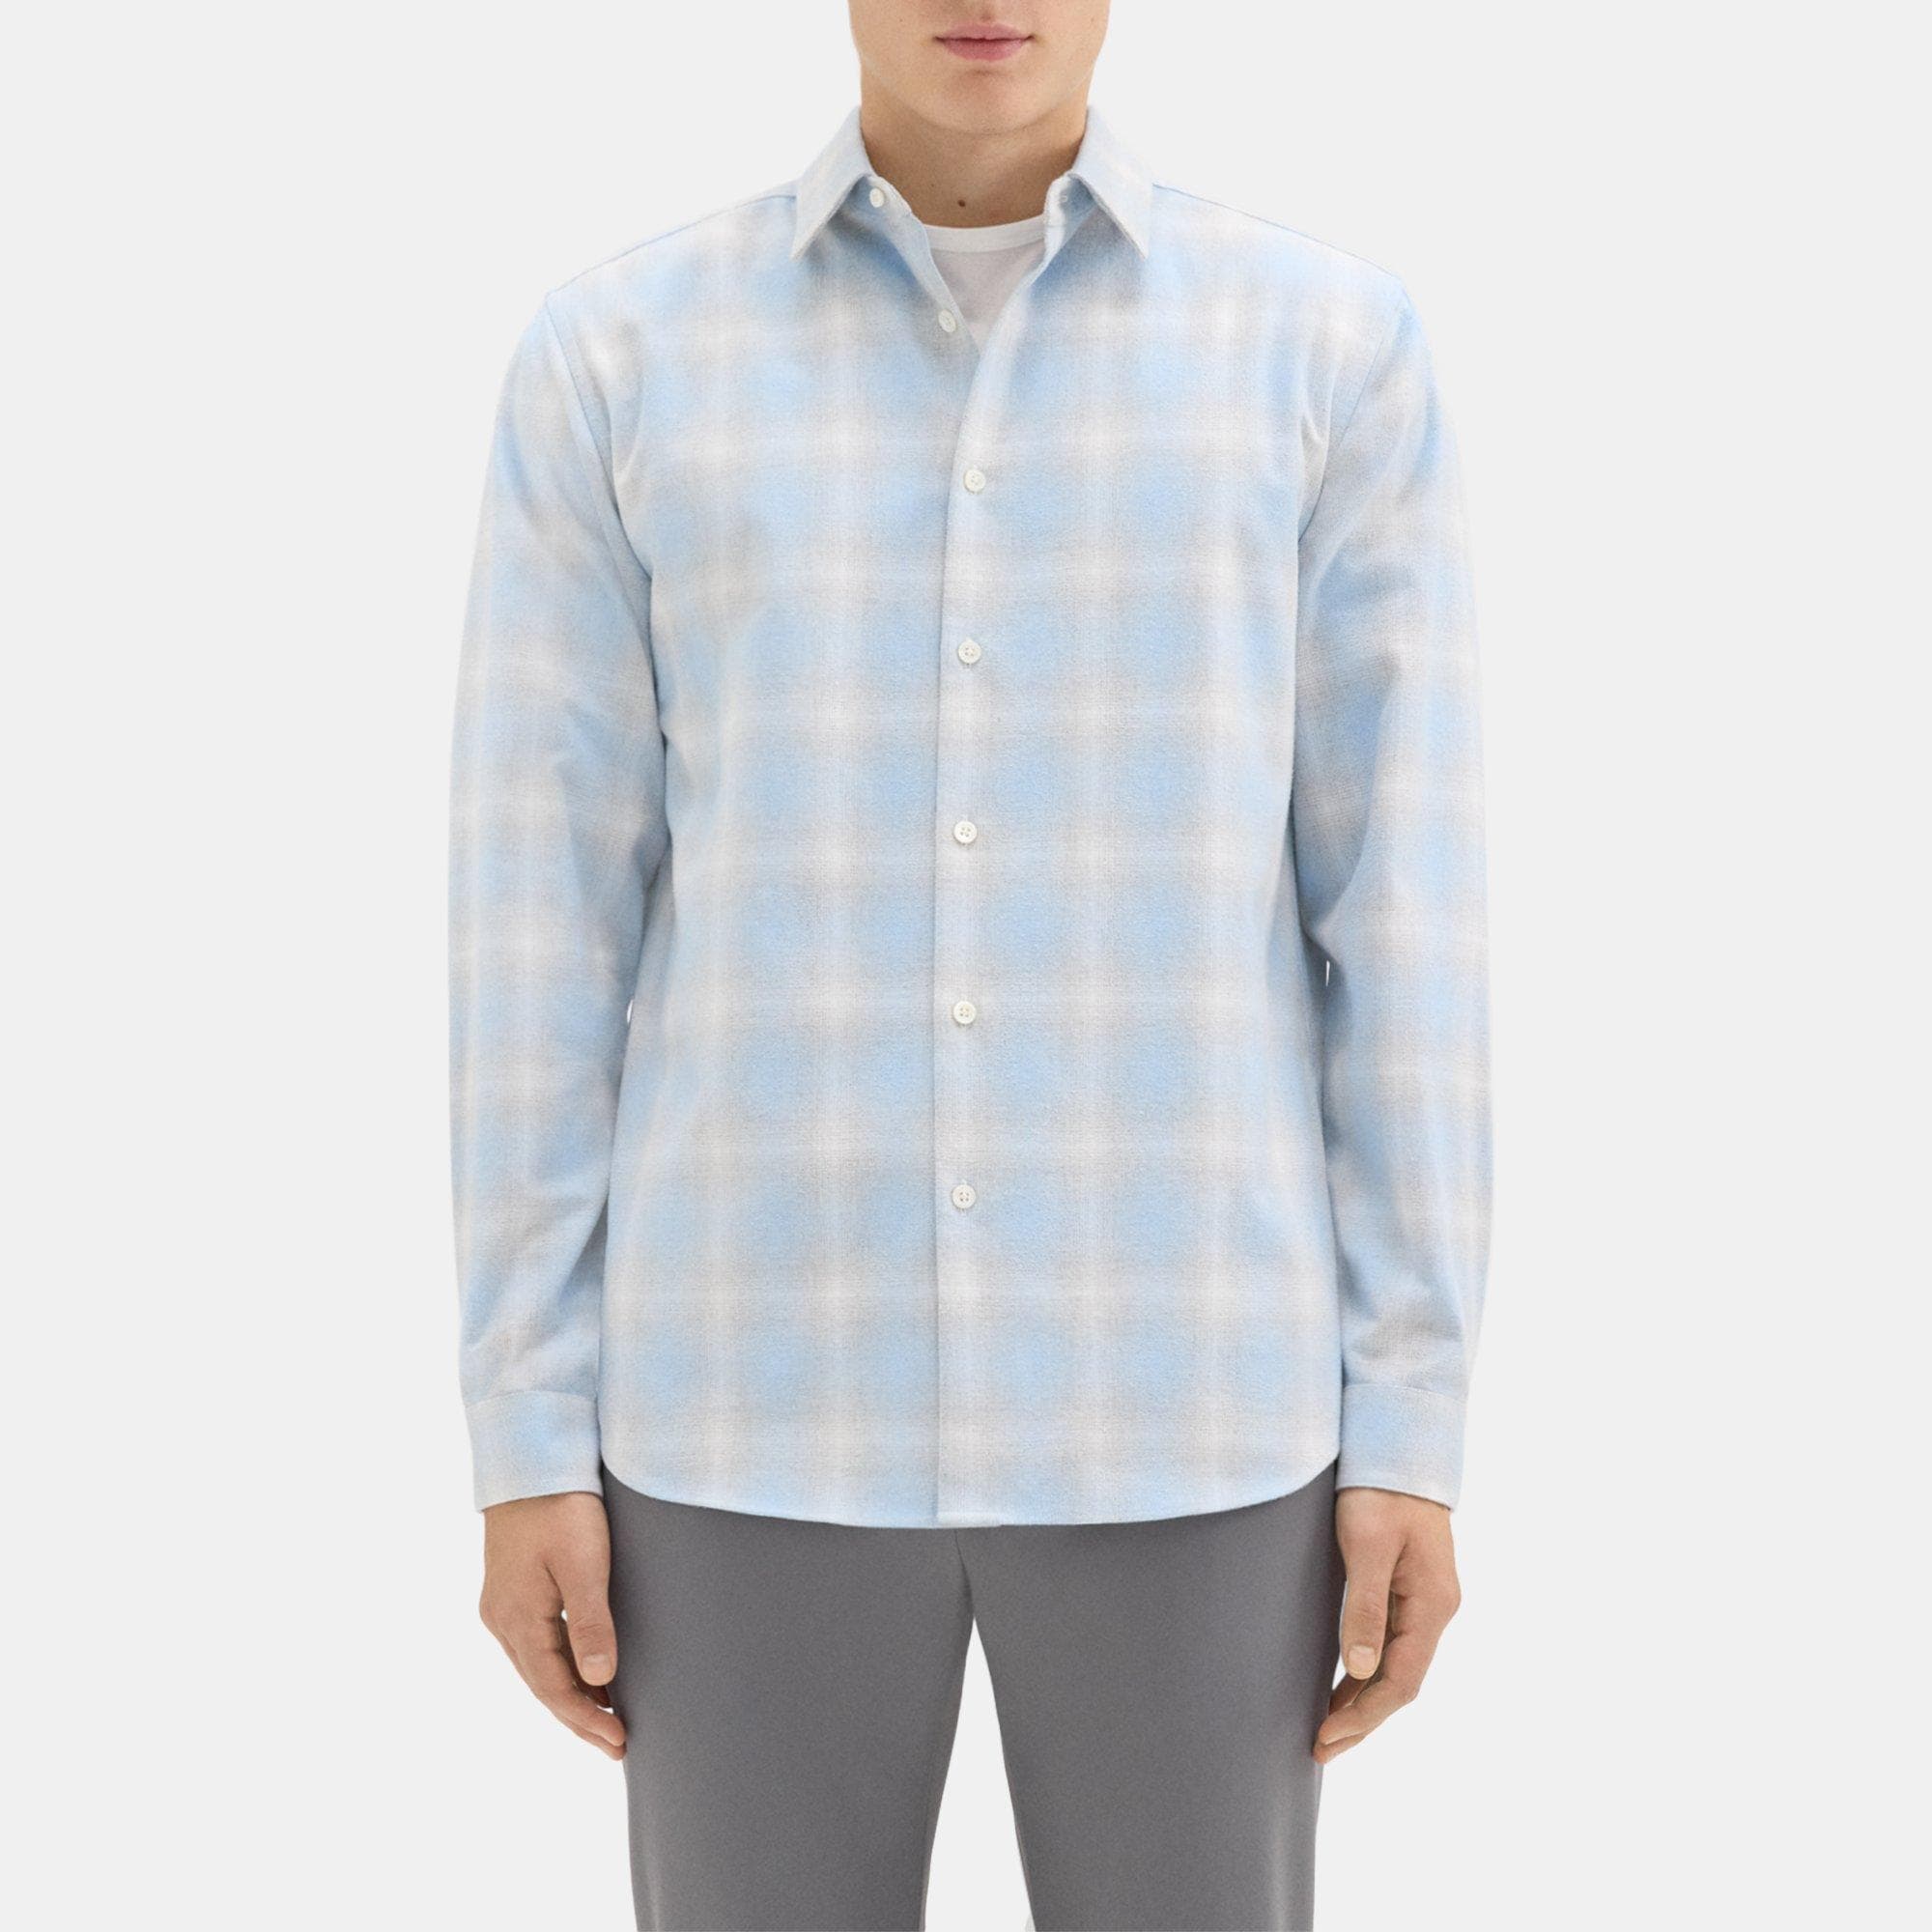 띠어리 Theory Irving Shirt in Cotton-Blend Flannel,BLUE MULTI